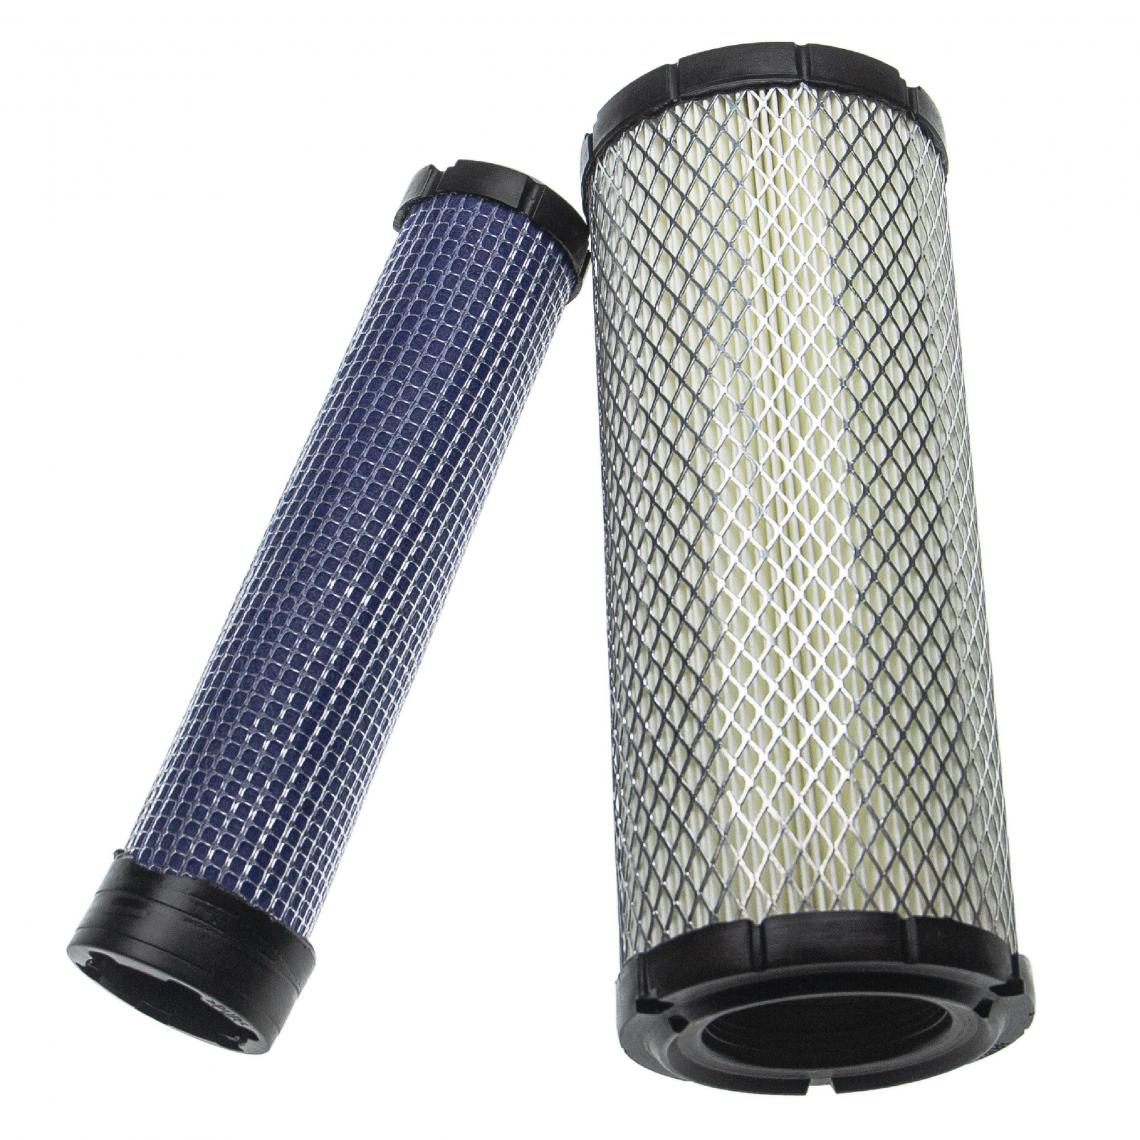 Vhbw - vhbw Lot de filtres compatible avec Toro 5500D, 5510, 7200, 7210, Groundsmaster 322D engin de chantier; 1x filtre interne, 1x filtre extérieur - Autre appareil de mesure